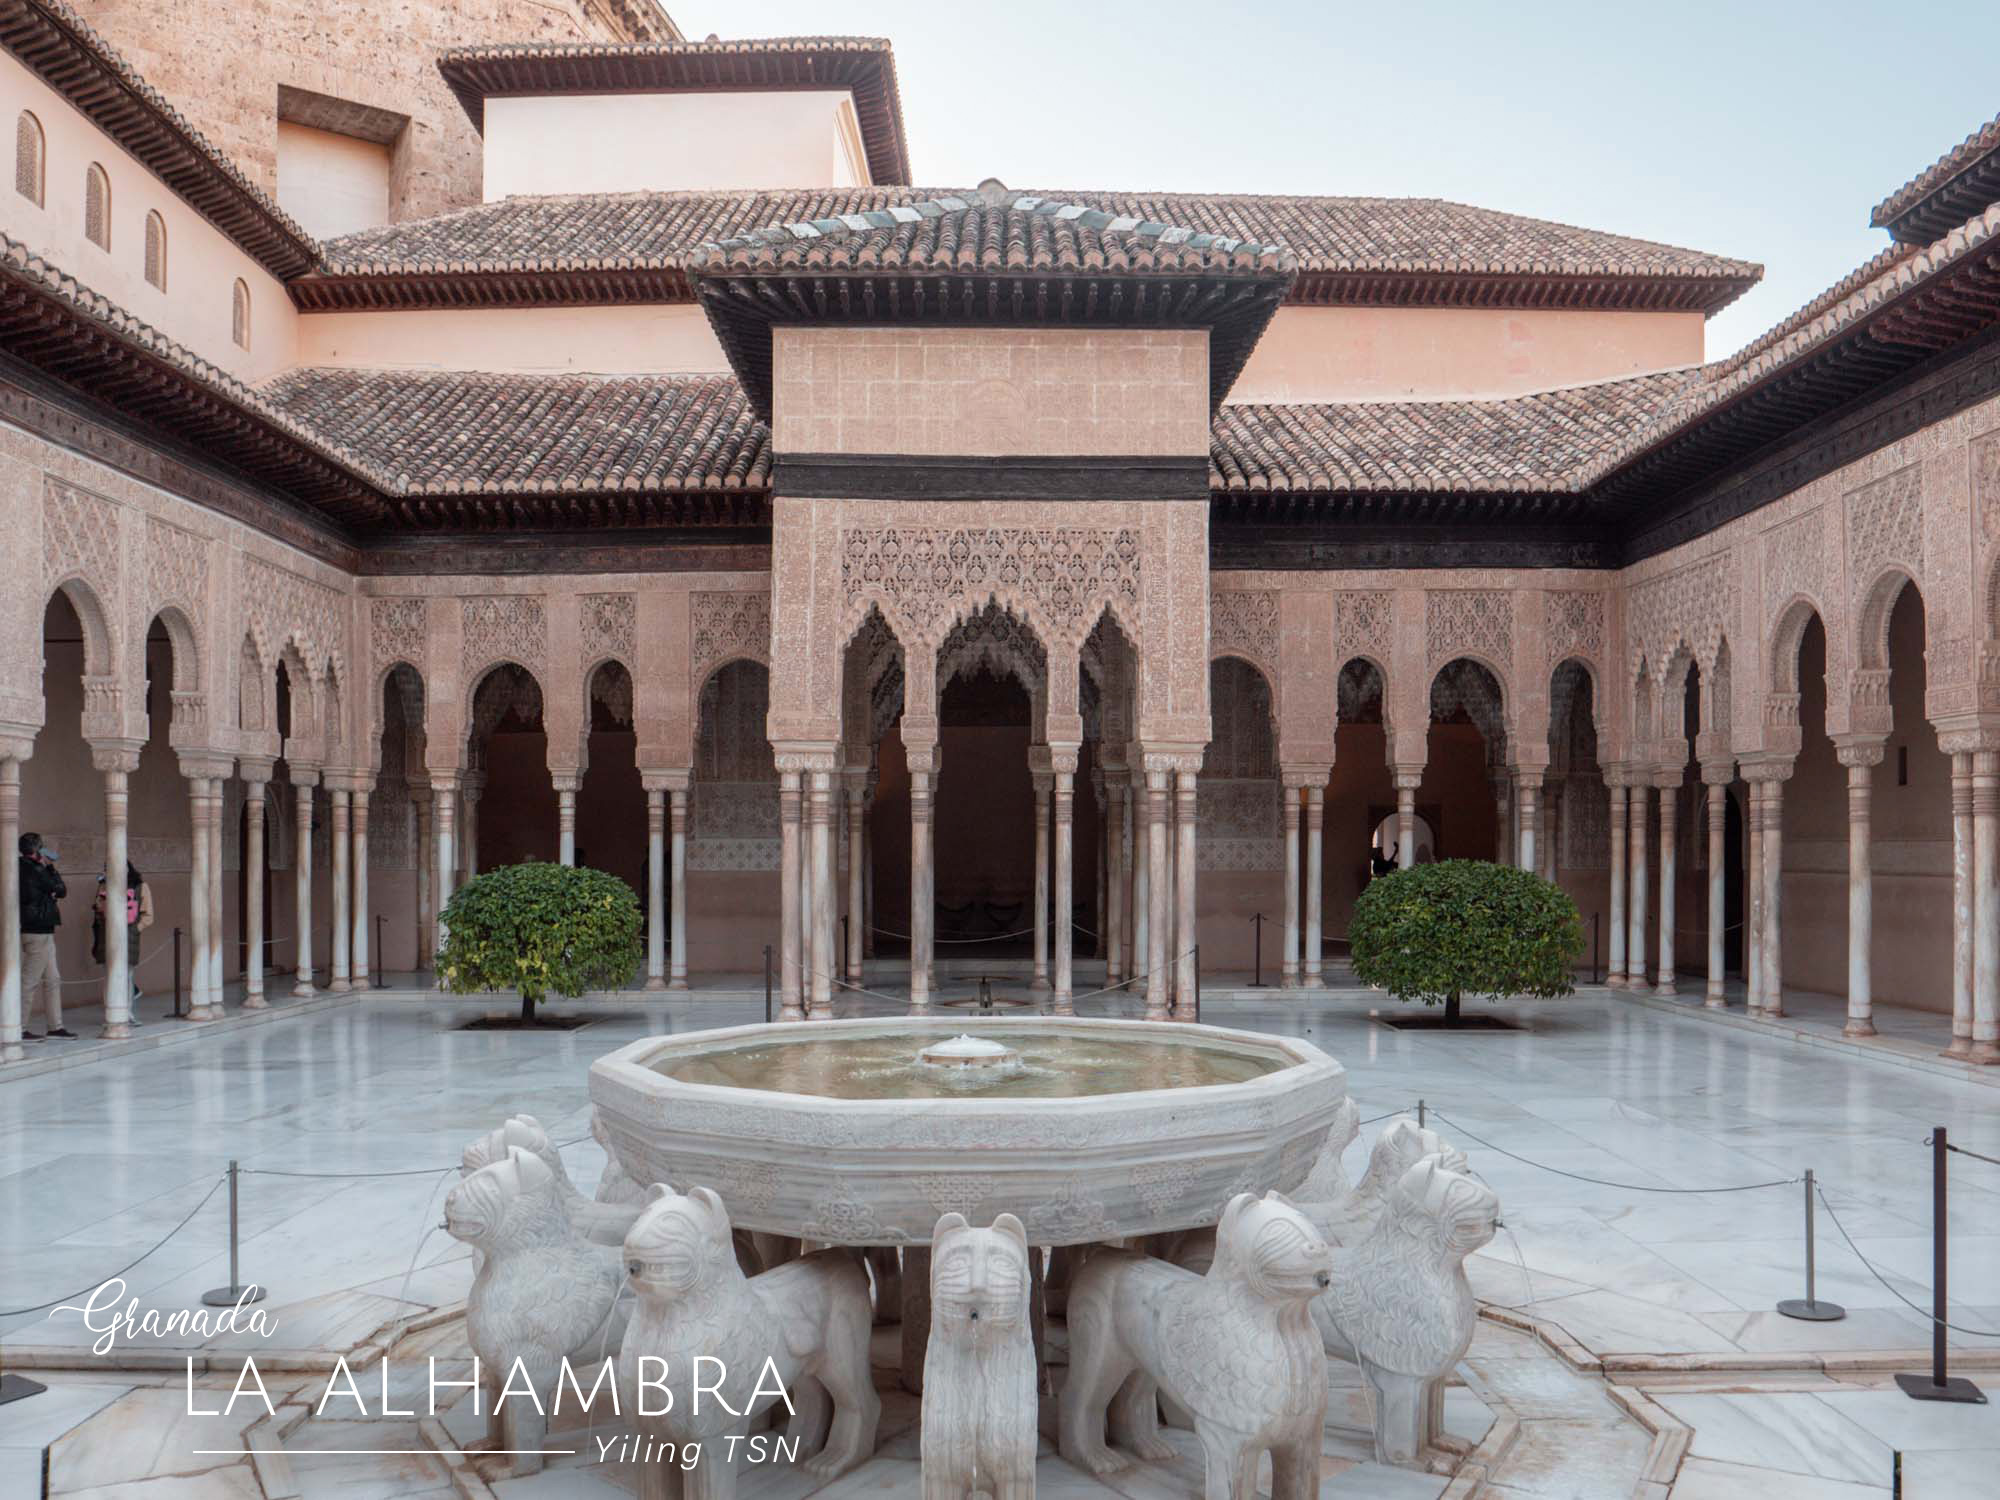 西班牙格拉納達｜La Alhambra 阿爾罕布拉宮：門票、交通、開放時間、參觀路線